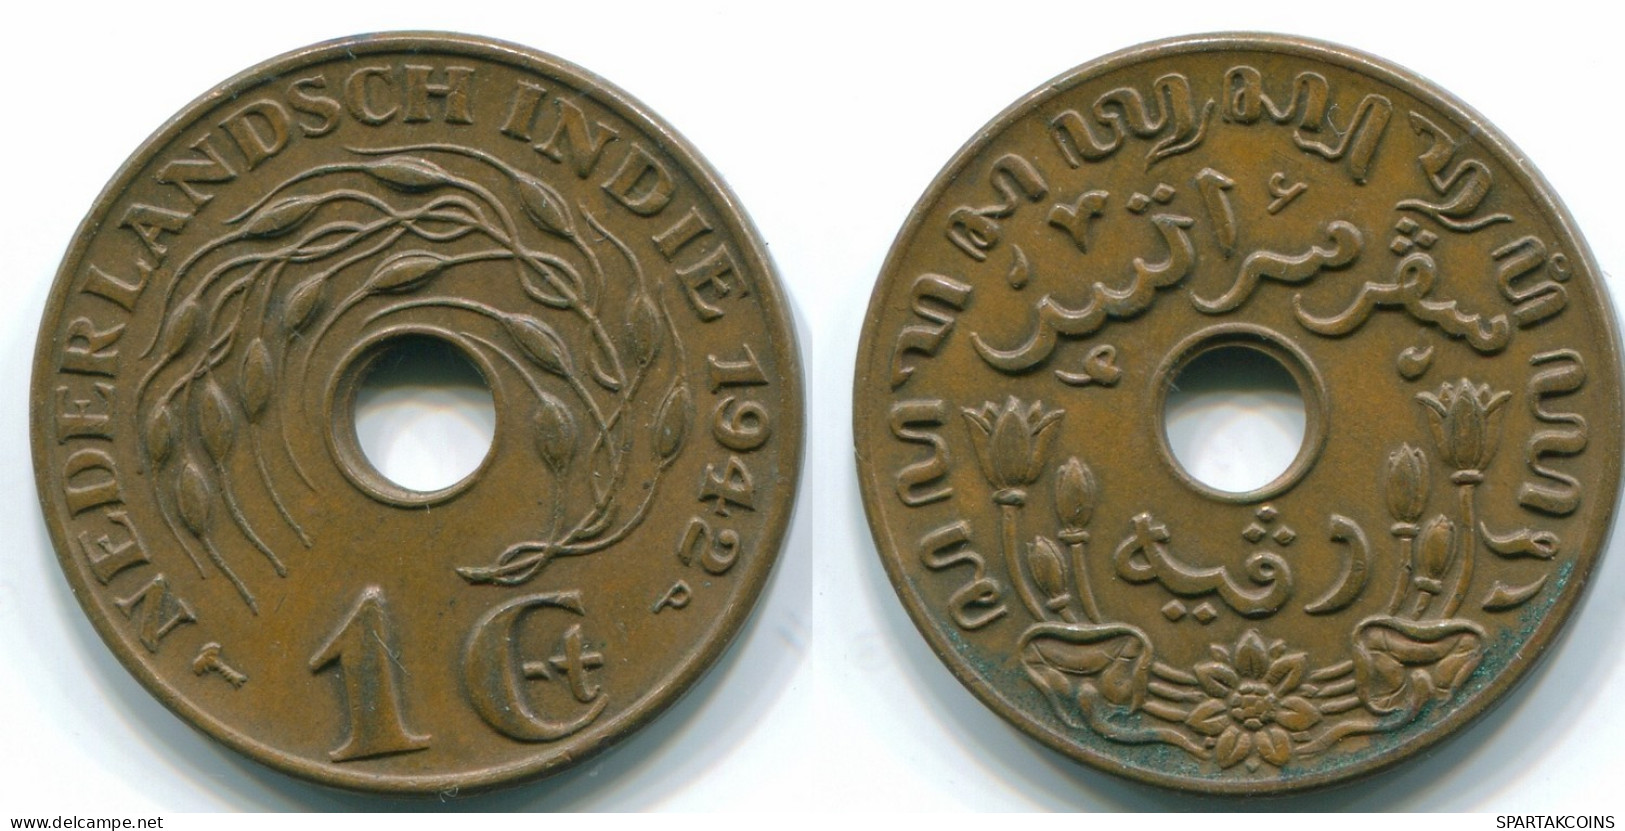 1 CENT 1942 INDIAS ORIENTALES DE LOS PAÍSES BAJOS INDONESIA Bronze #S10305.E.A - Niederländisch-Indien